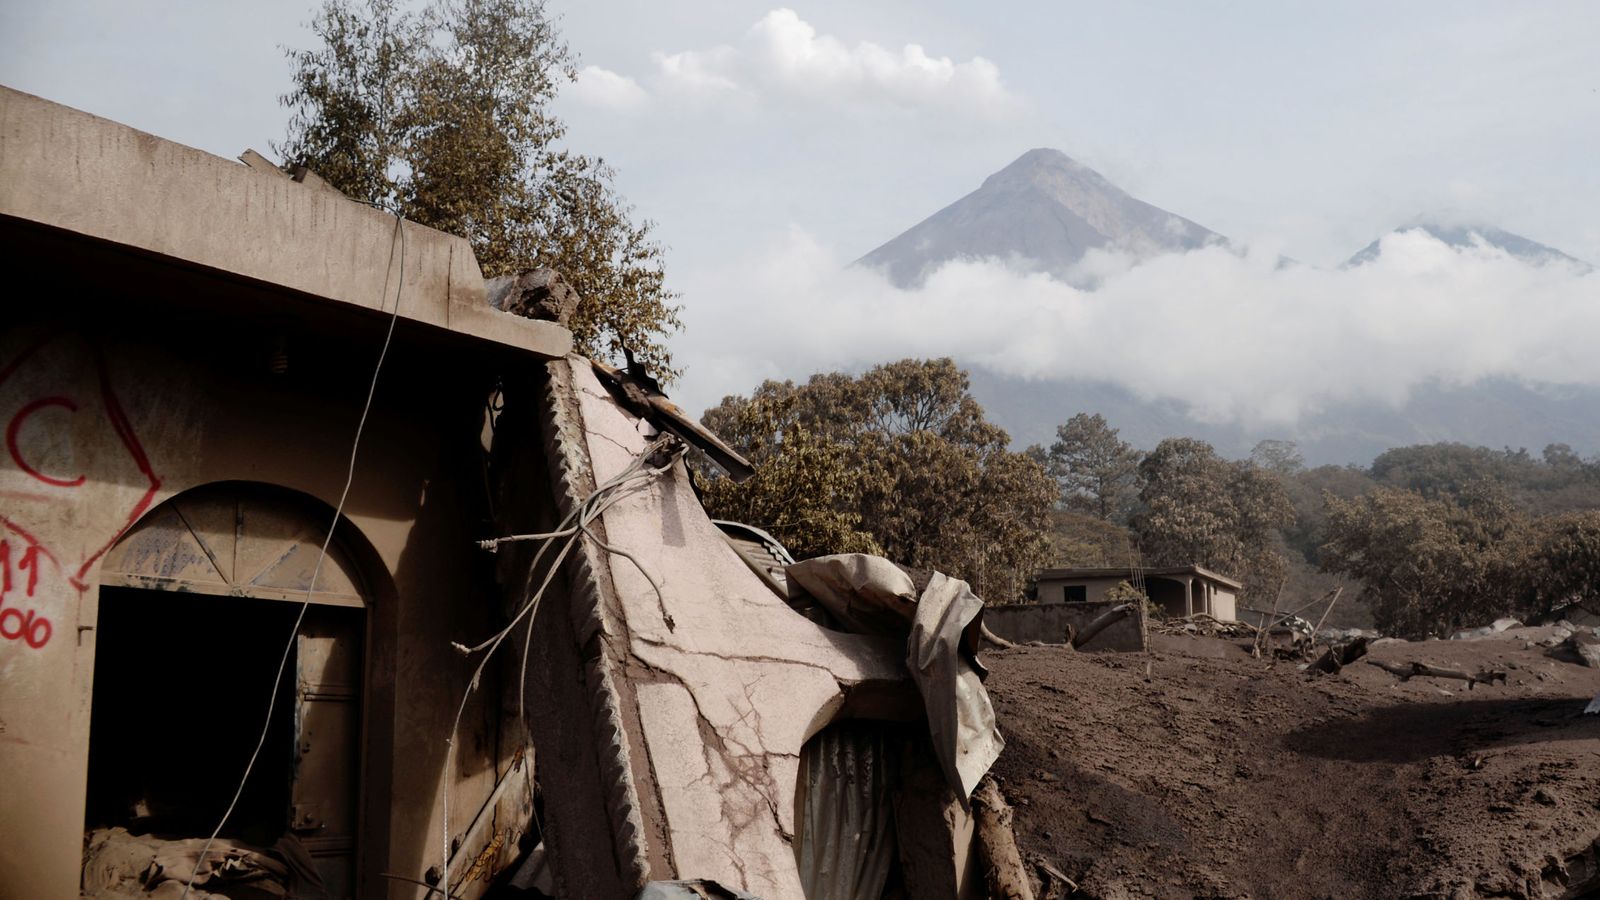 Foto: El Volcán de Fuego visto por detrás de unas viviendas dañadas por la erupción en El Rodeo, el 6 de junio de 2018. (Reuters)